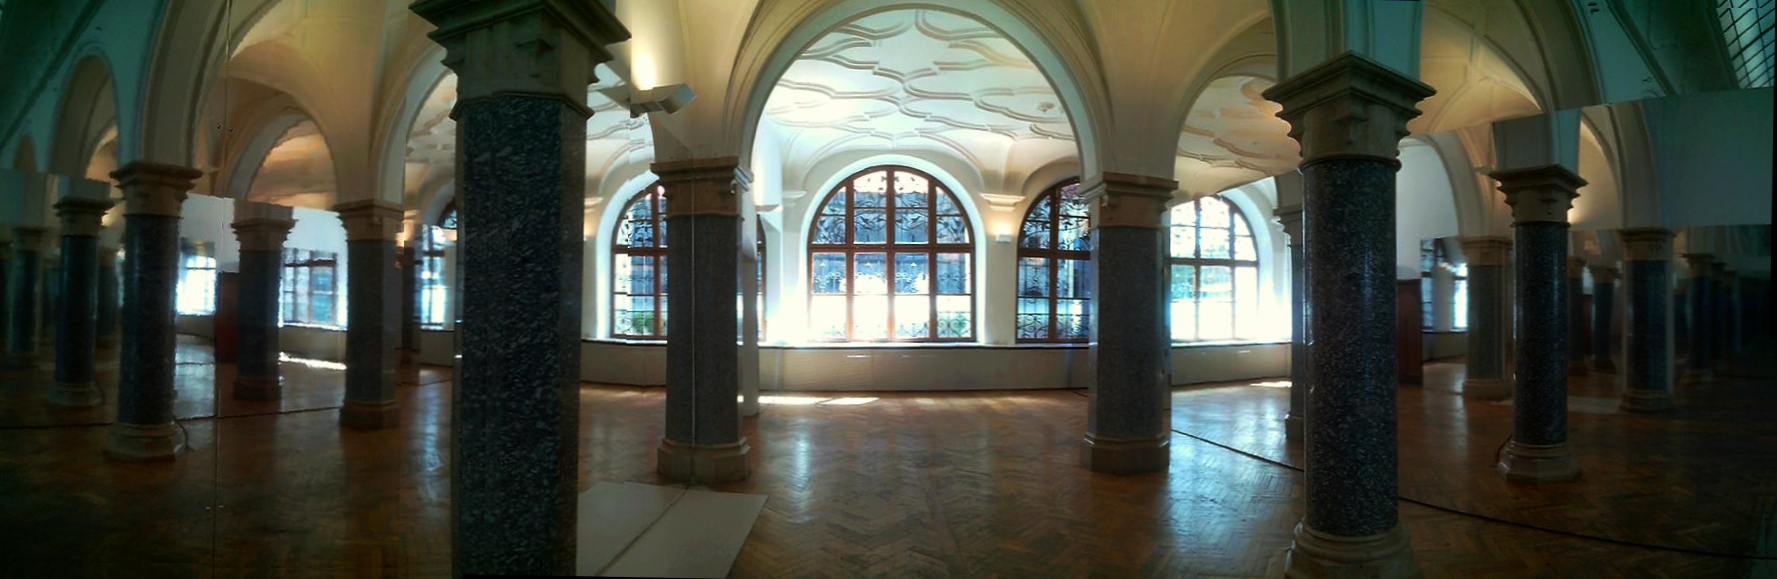 neoklassizistischer Raum im Stadtzentrum München